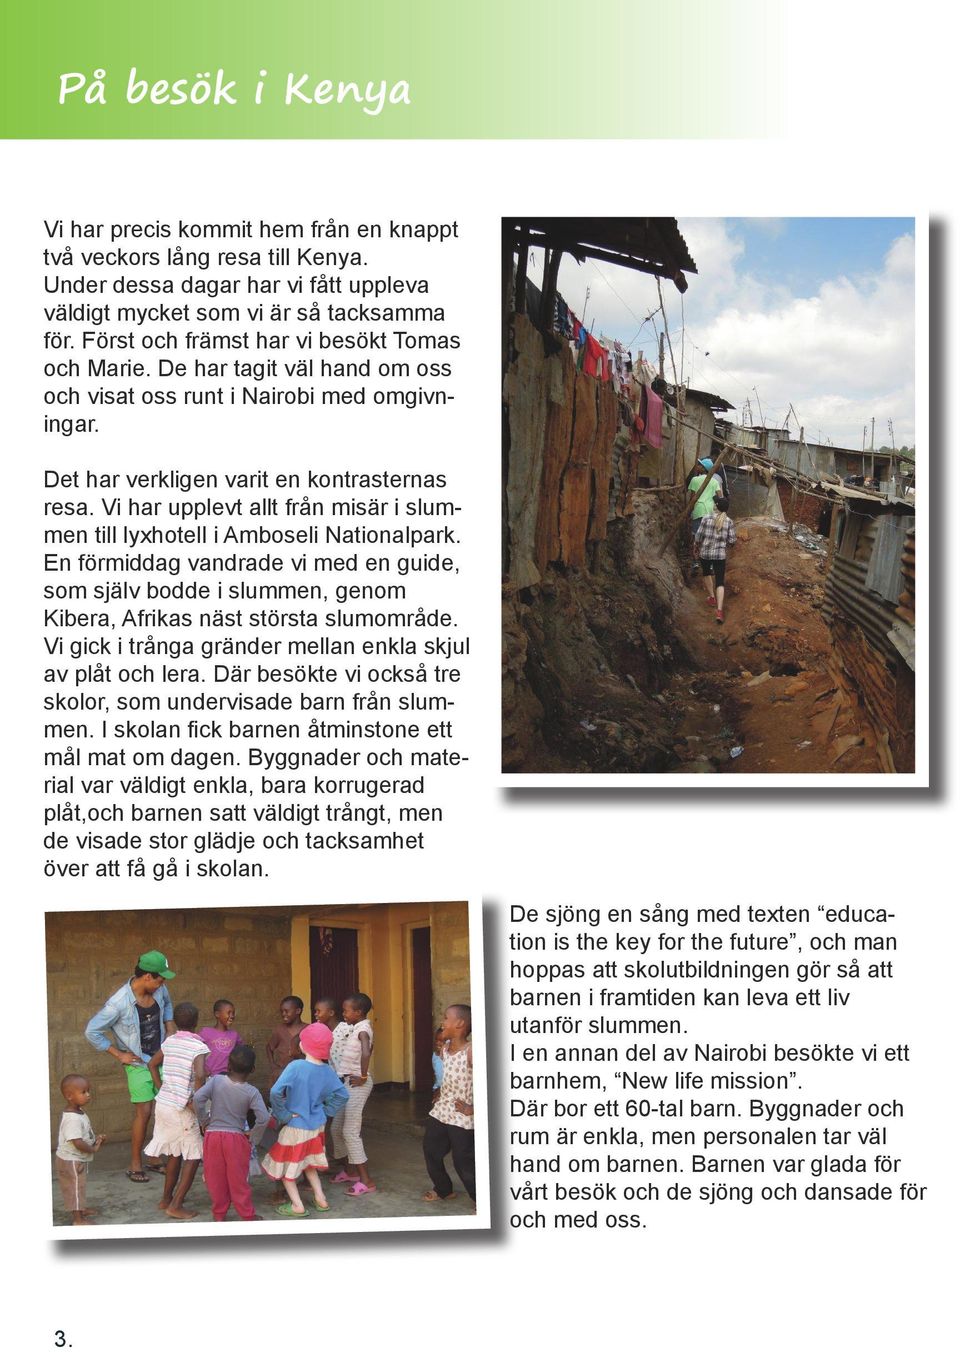 Vi har upplevt allt från misär i slummen till lyxhotell i Amboseli Nationalpark. En förmiddag vandrade vi med en guide, som själv bodde i slummen, genom Kibera, Afrikas näst största slumområde.